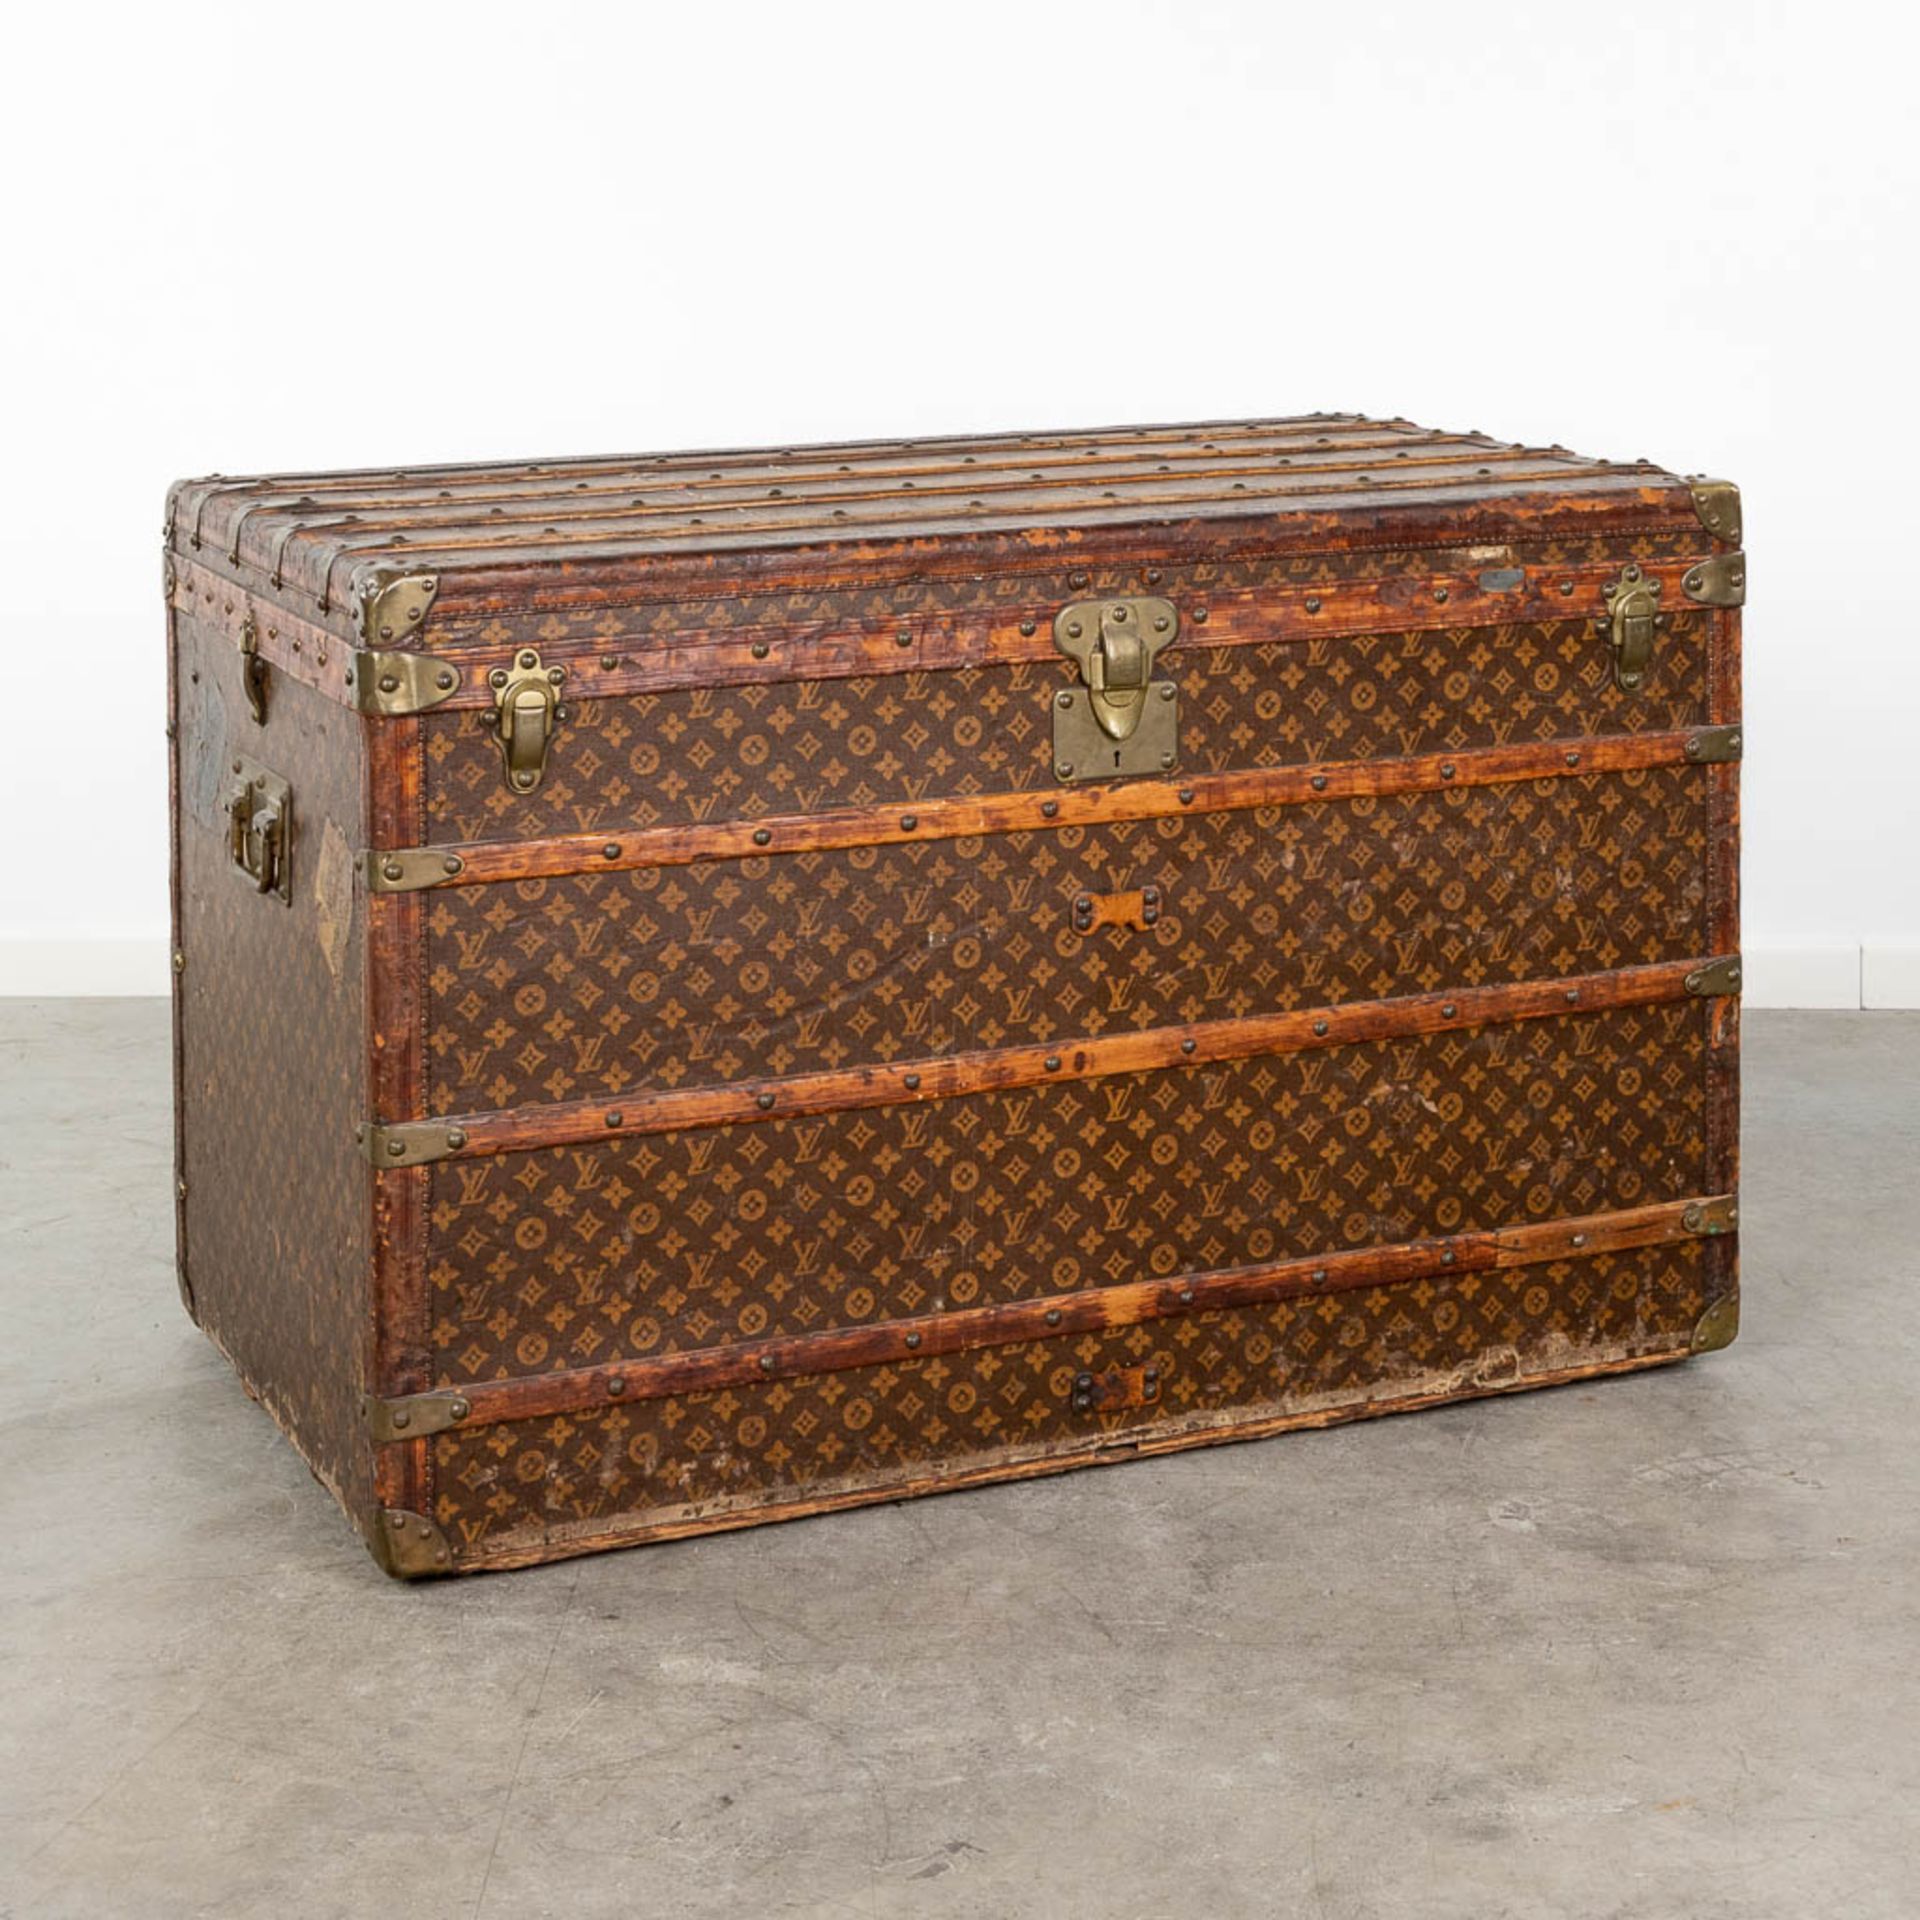 Louis Vuitton, a large and antique suitcase. (L:63 x W:113 x H:72 cm) - Bild 3 aus 25